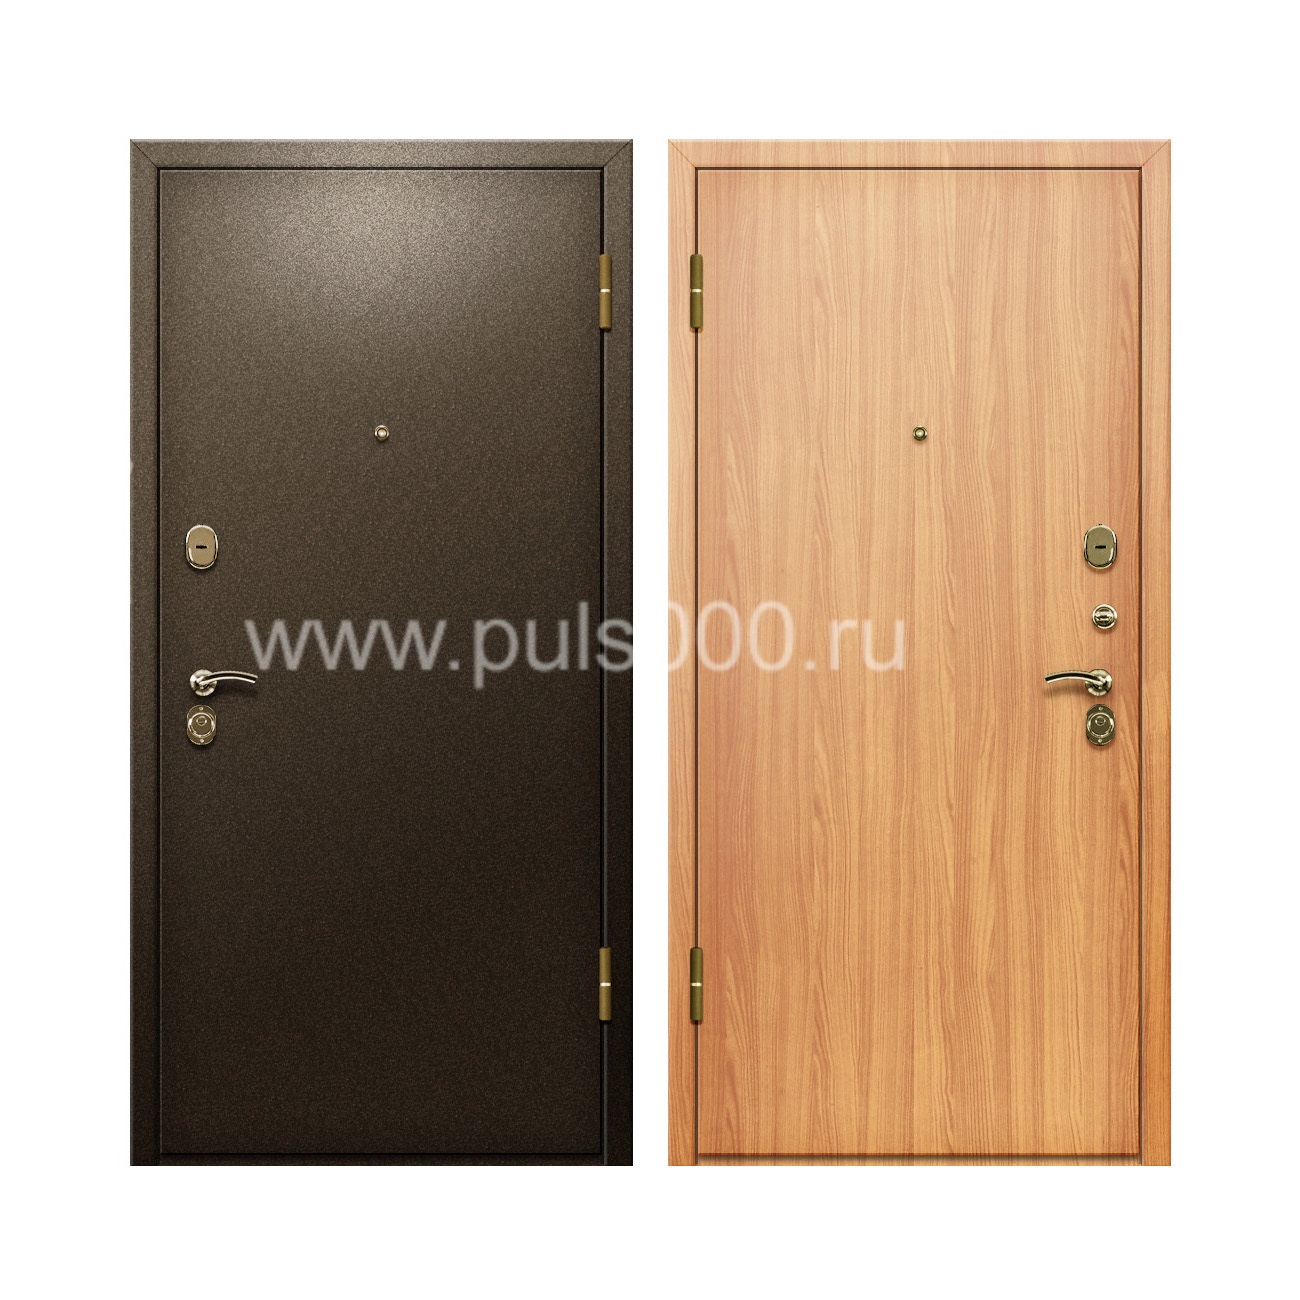 Темная входная дверь с порошком и ламинатом PR-92, цена 18 000  руб.